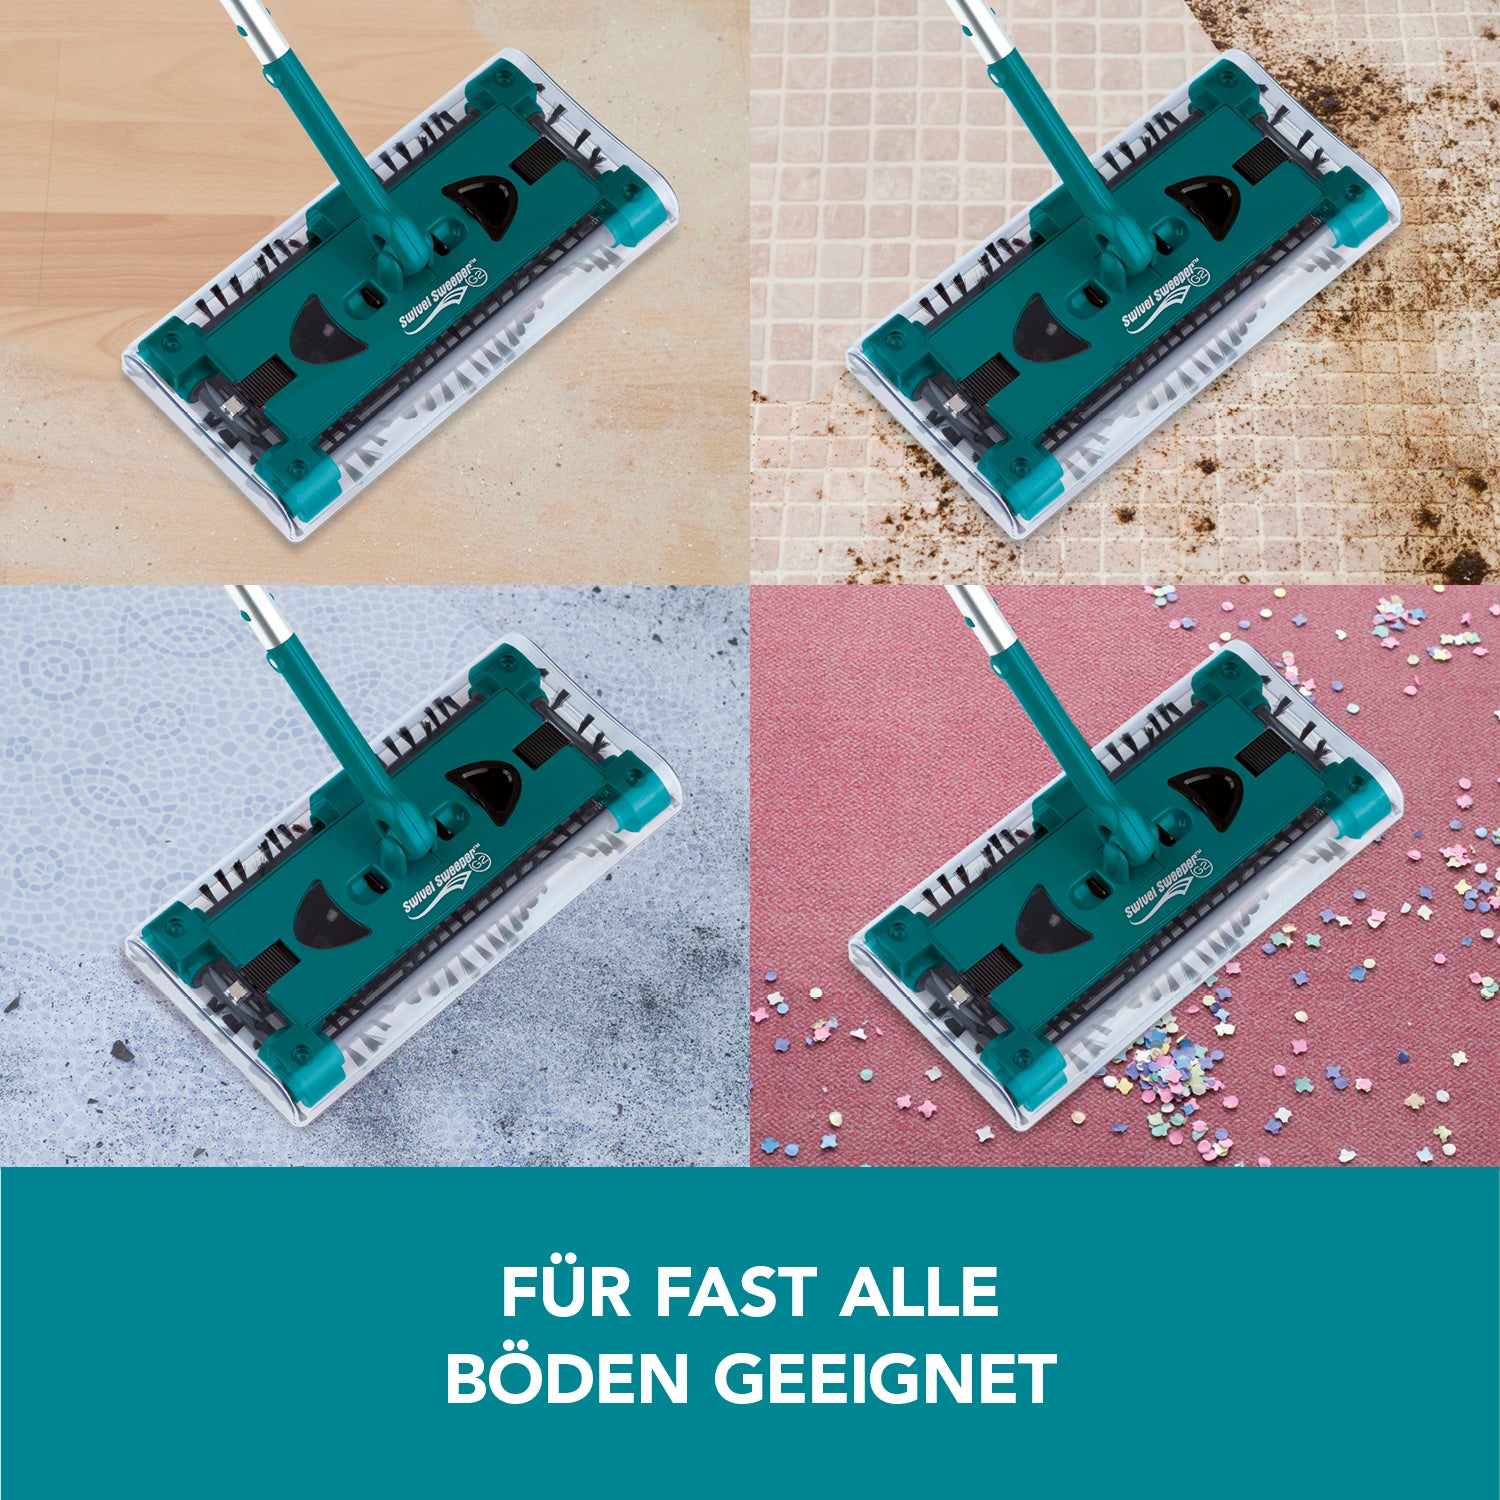 Akku-Besen Swivel Sweeper G2 + Ersatz-Akku - kabellos und wiederaufladbar - smaragd